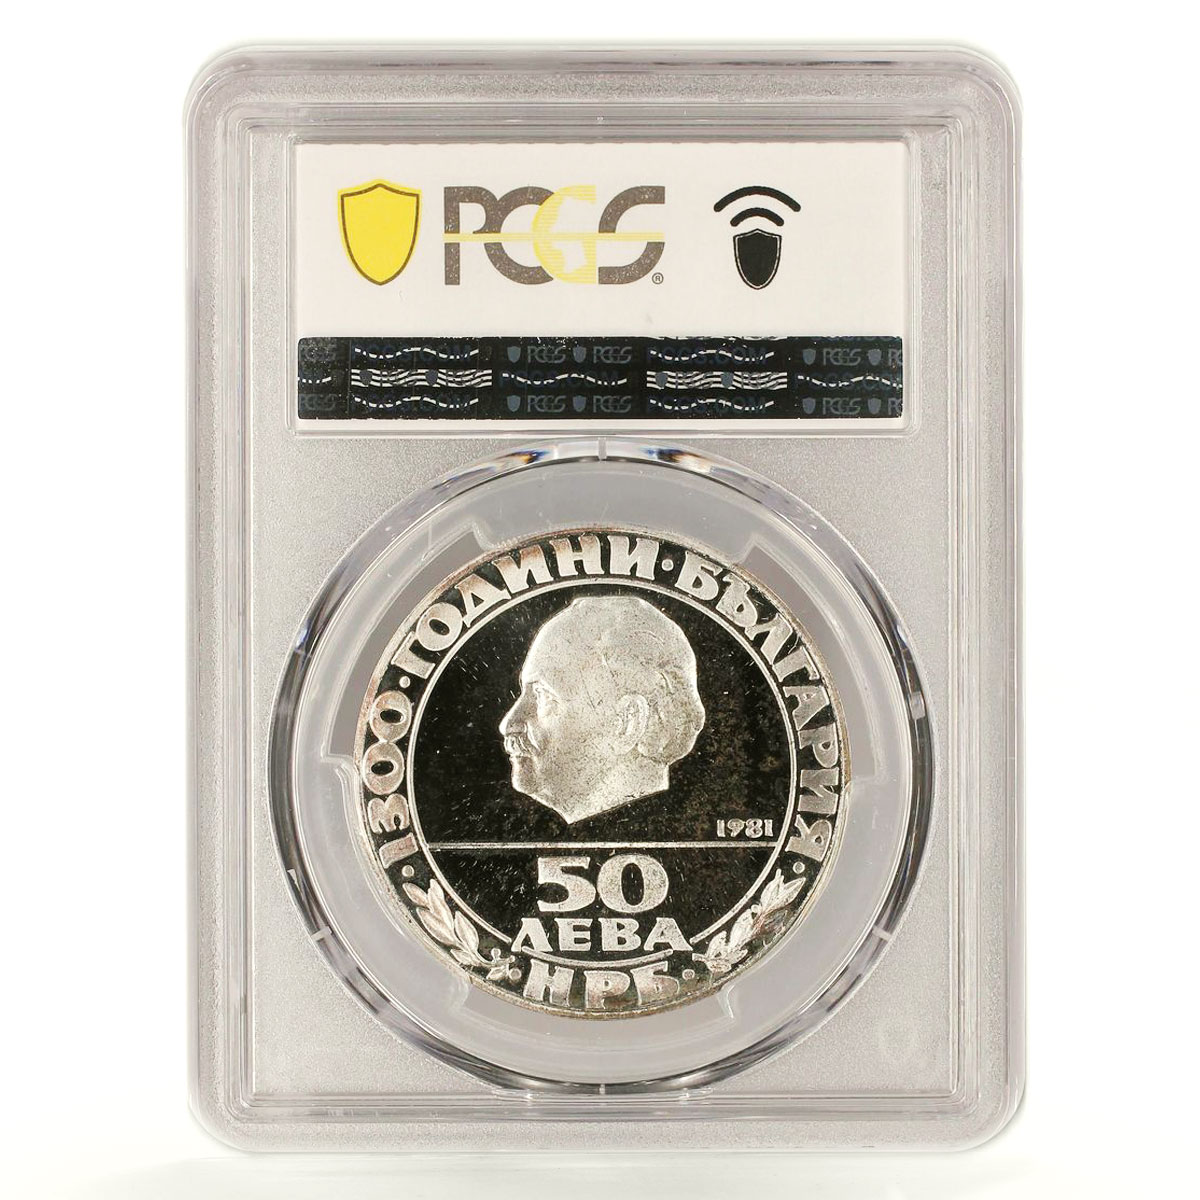 Bulgaria 50 leva 1300th Anniversary of Republic PR67 PCGS silver coin 1981